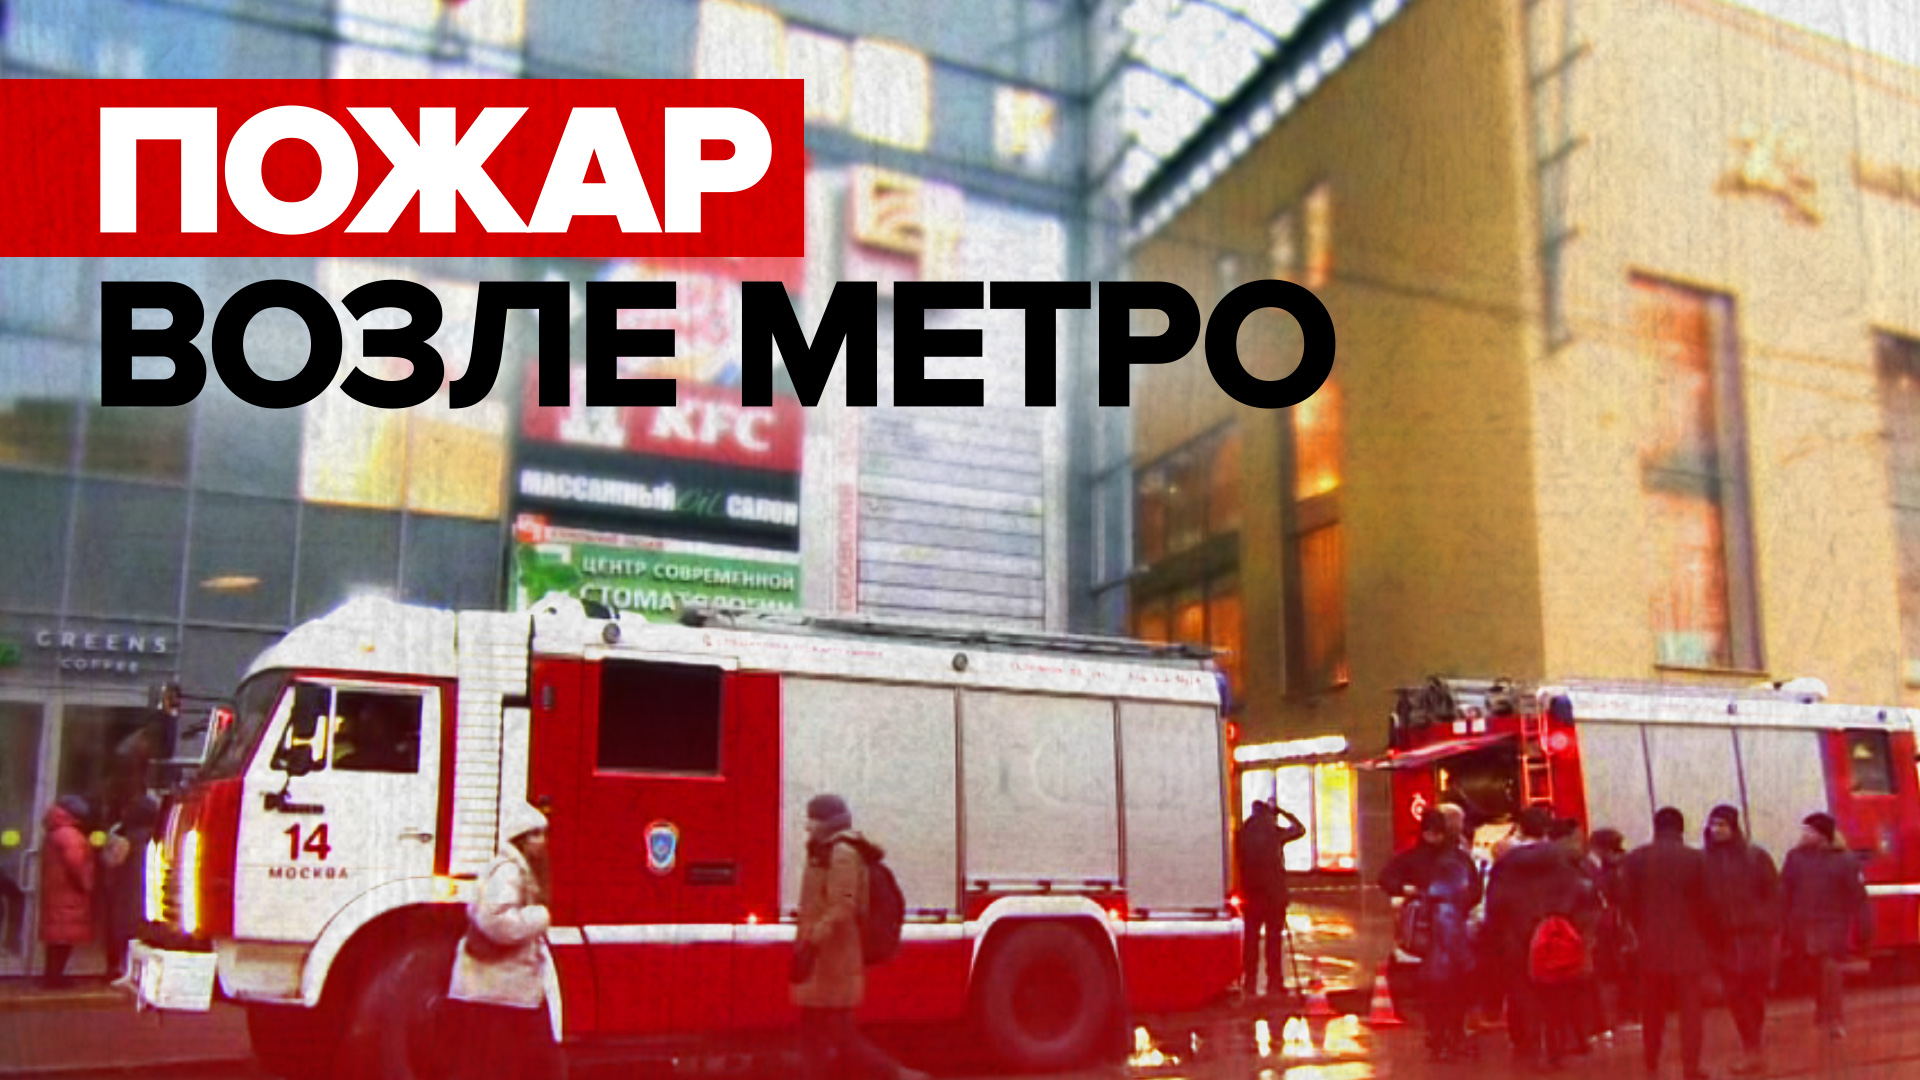 Обстановка на месте пожара в торговом центре в Москве — видео